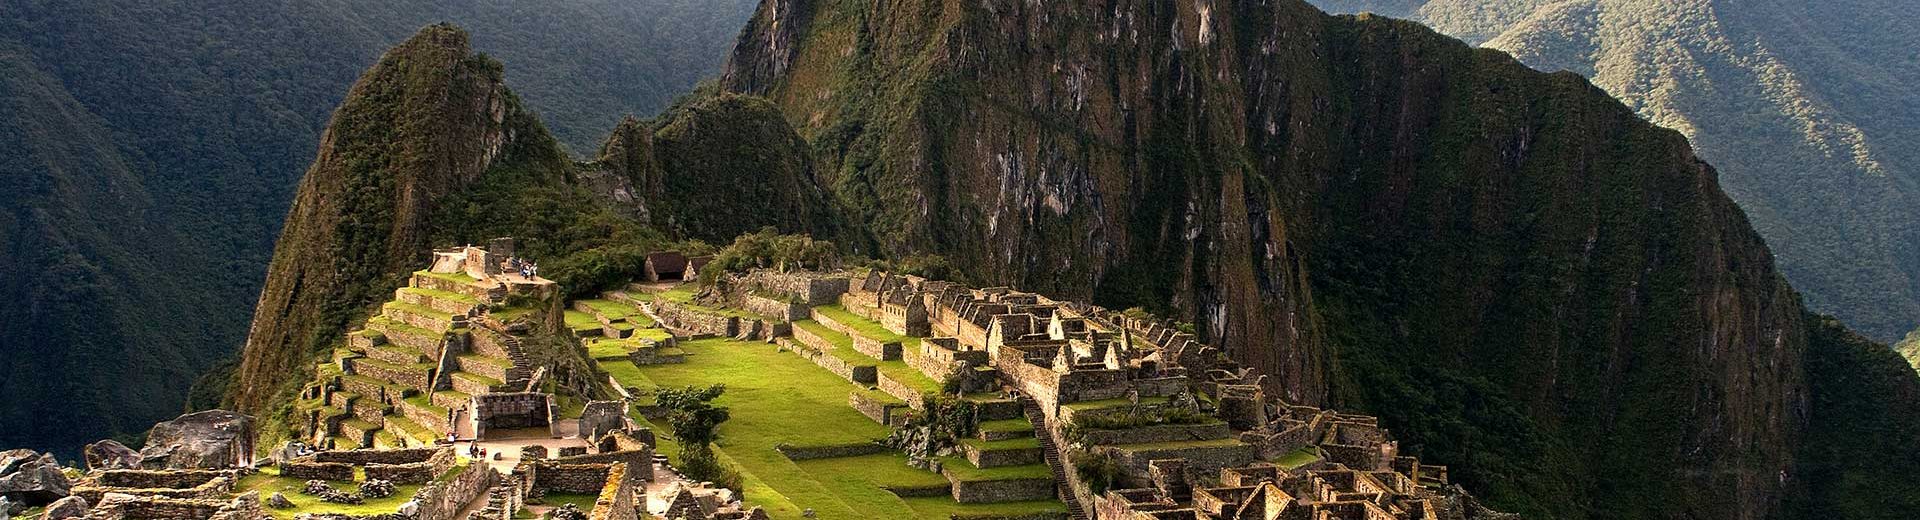 Pontos turísticos do Peru: Machu Picchu museus, ilhas e muito mais para você visitar